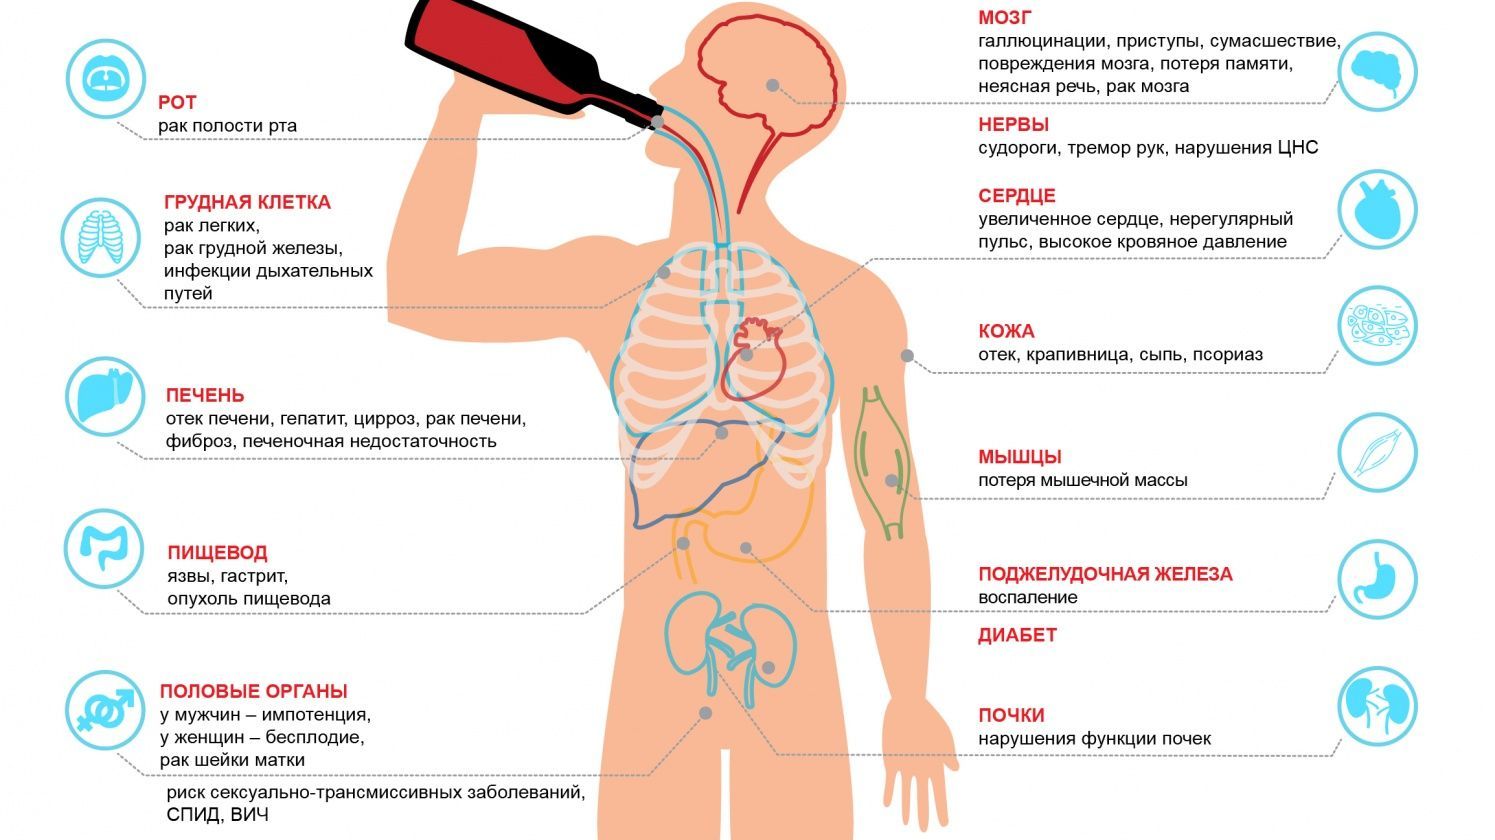 отрицательное влияние алкоголя на организм человека